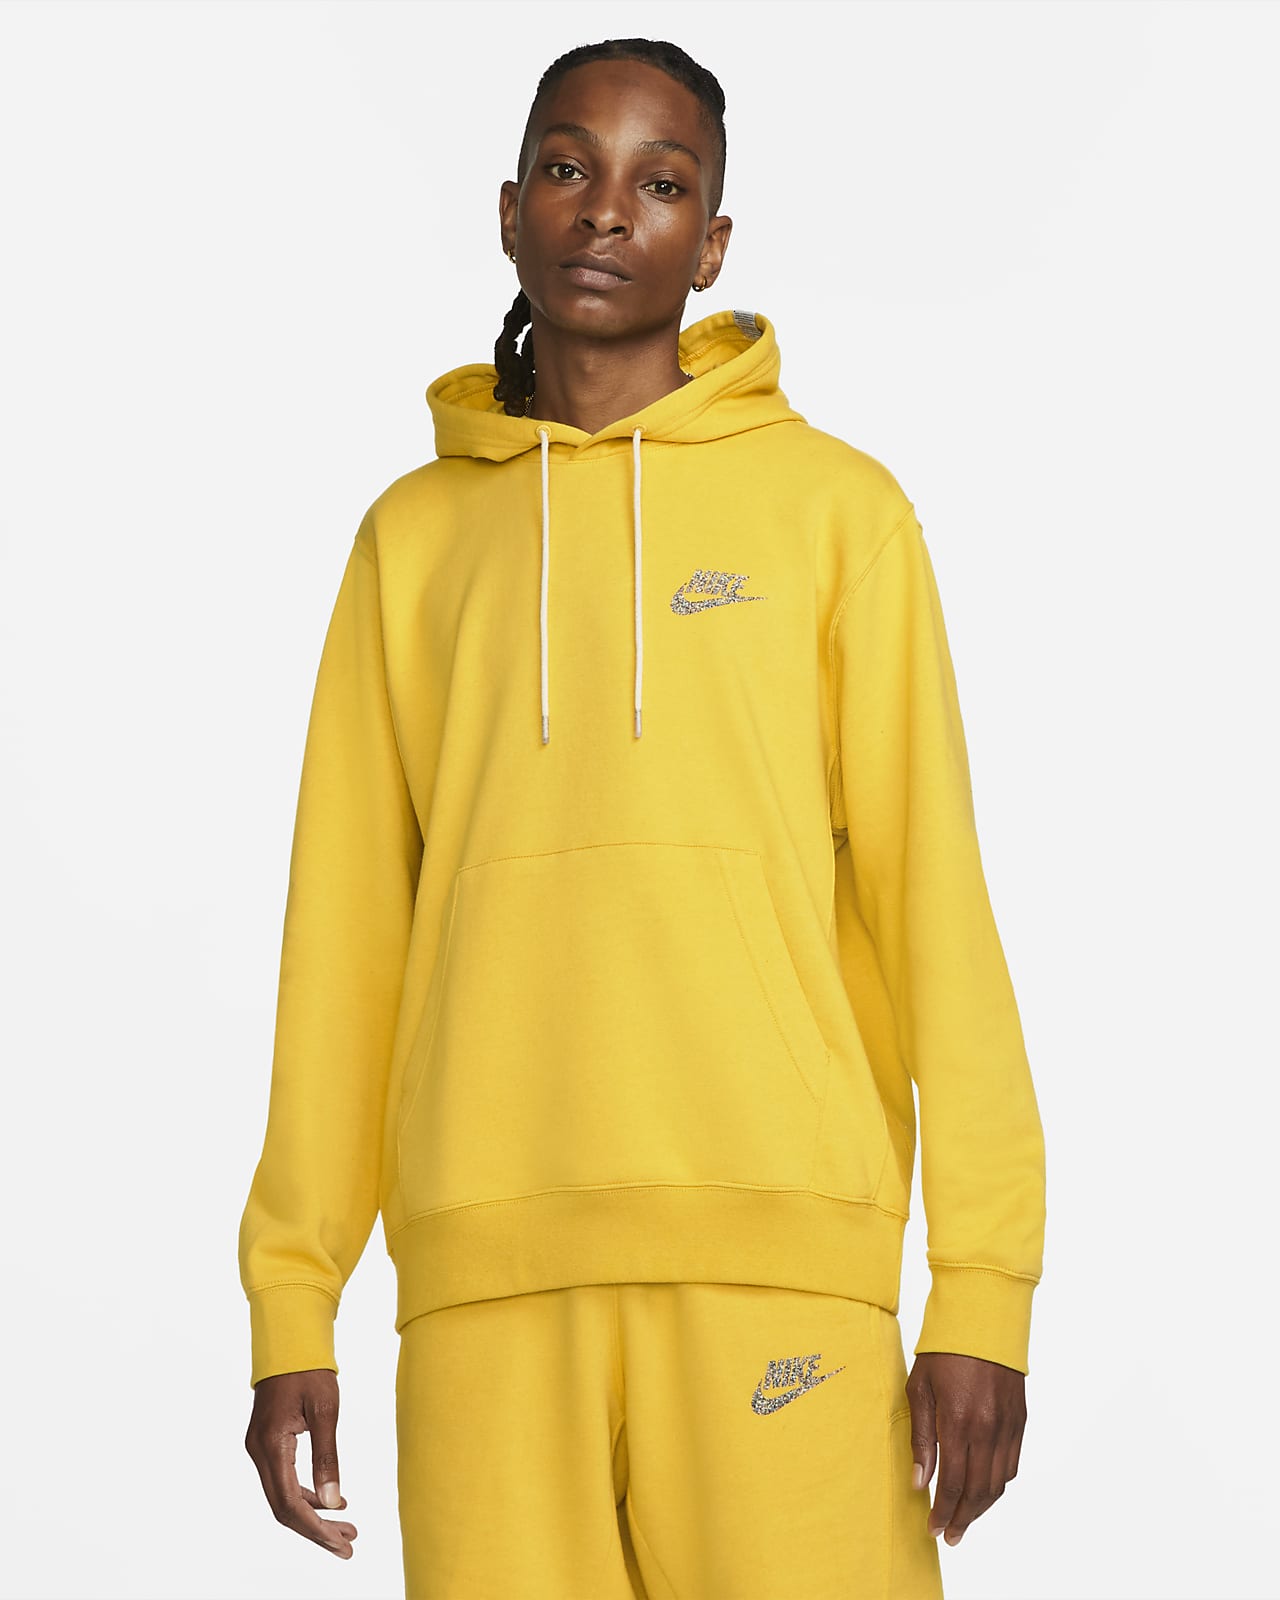 Nike Sportswear Men's Yellow 'Revival' Fleece Pullover Hoodie | The ...